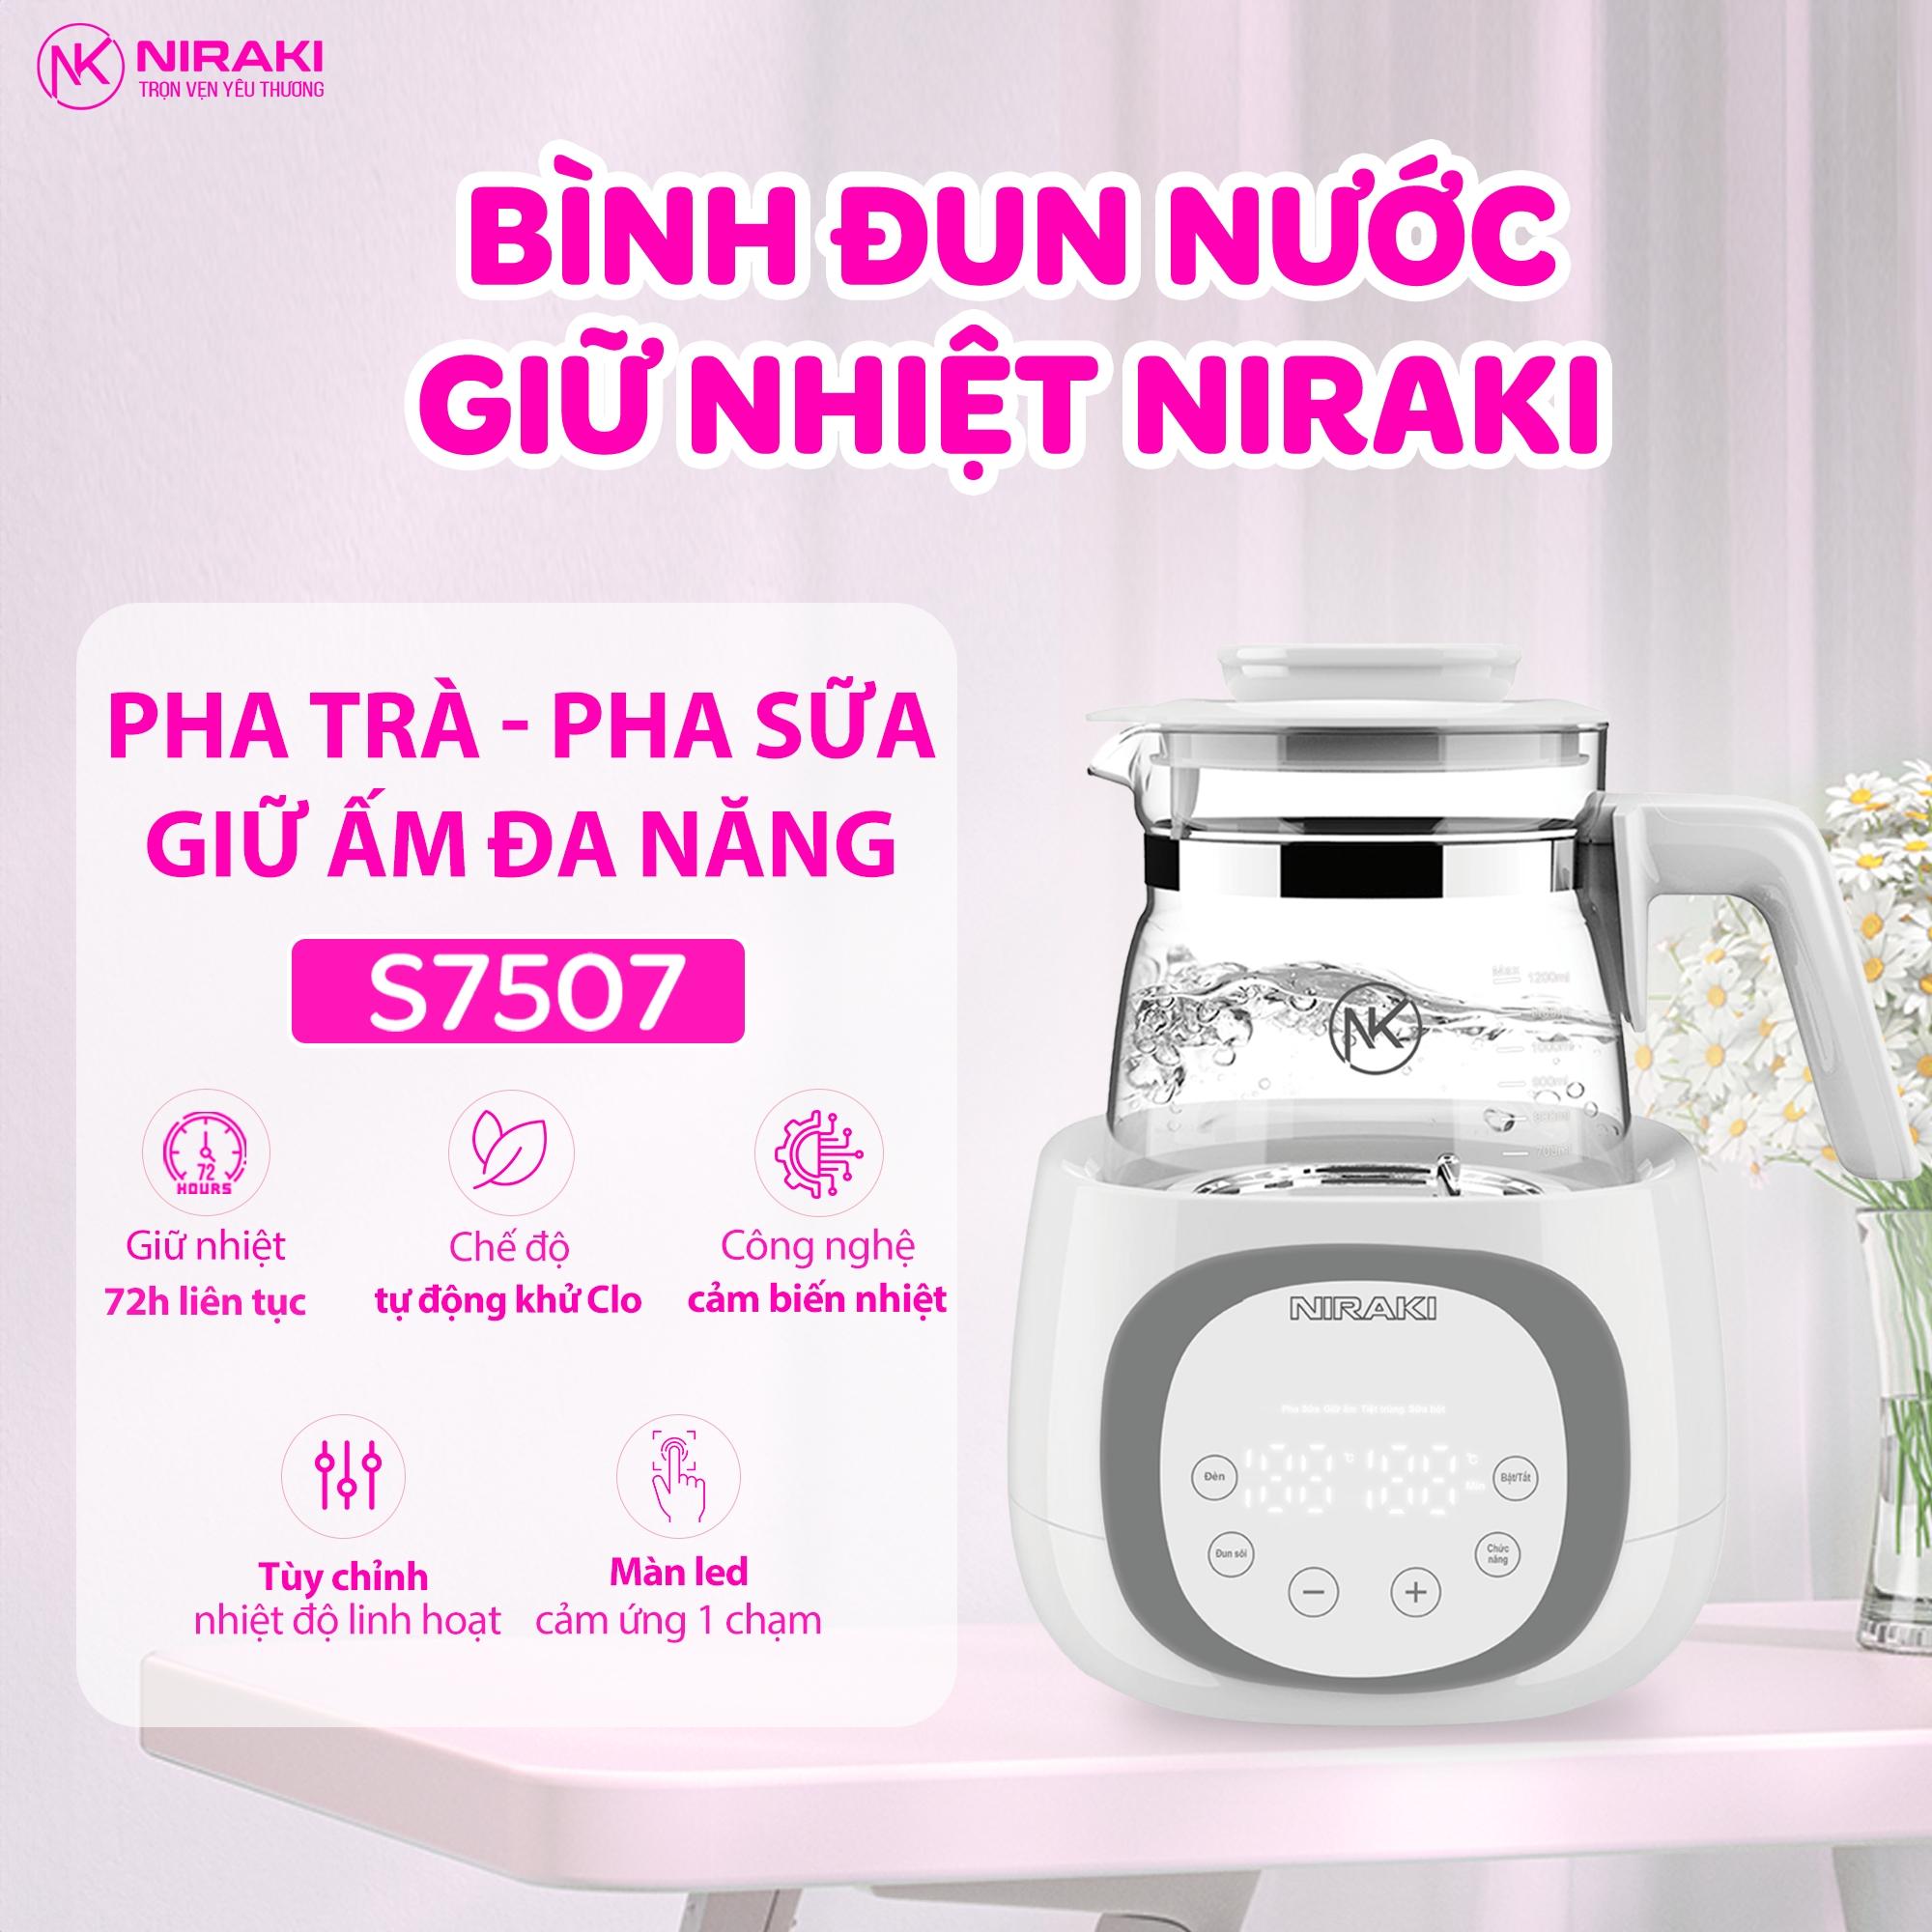 Chăm sóc mẹ và bé tối ưu cùng hệ sinh thái sản phẩm chất lượng của Niraki Việt Nam - 4